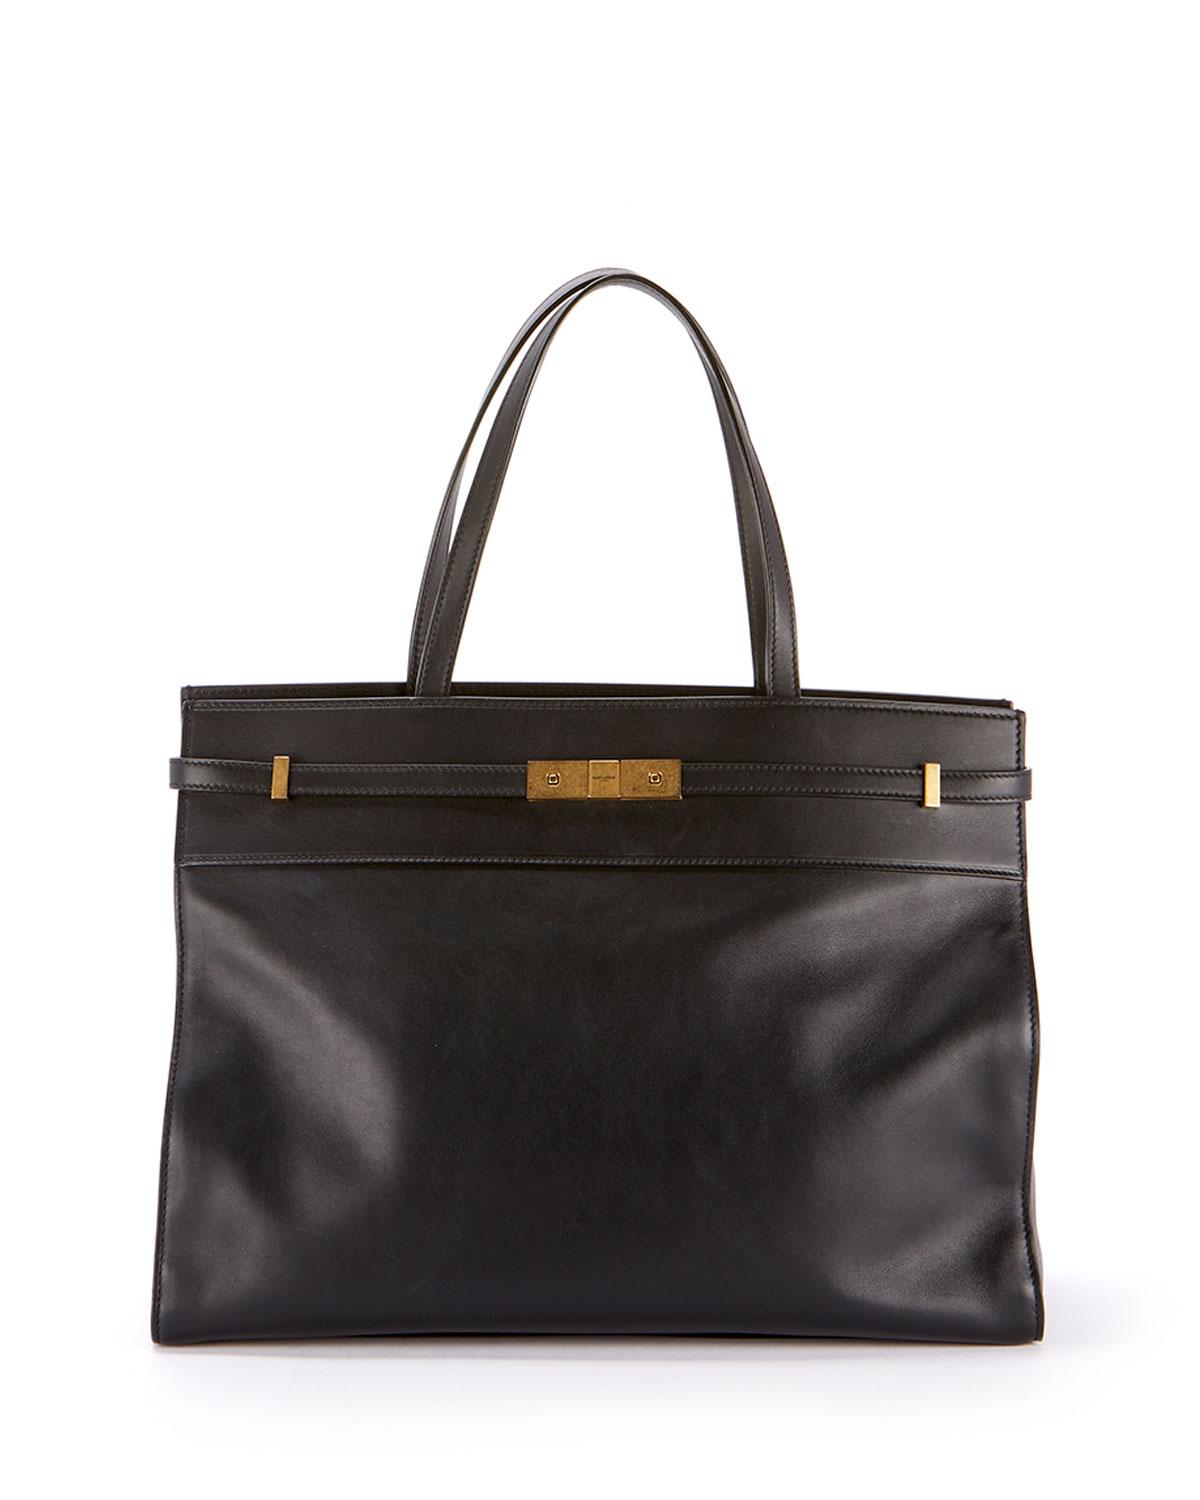 Saint Laurent Manhattan Medium Smooth Leather Tote Bag in Black - Lyst